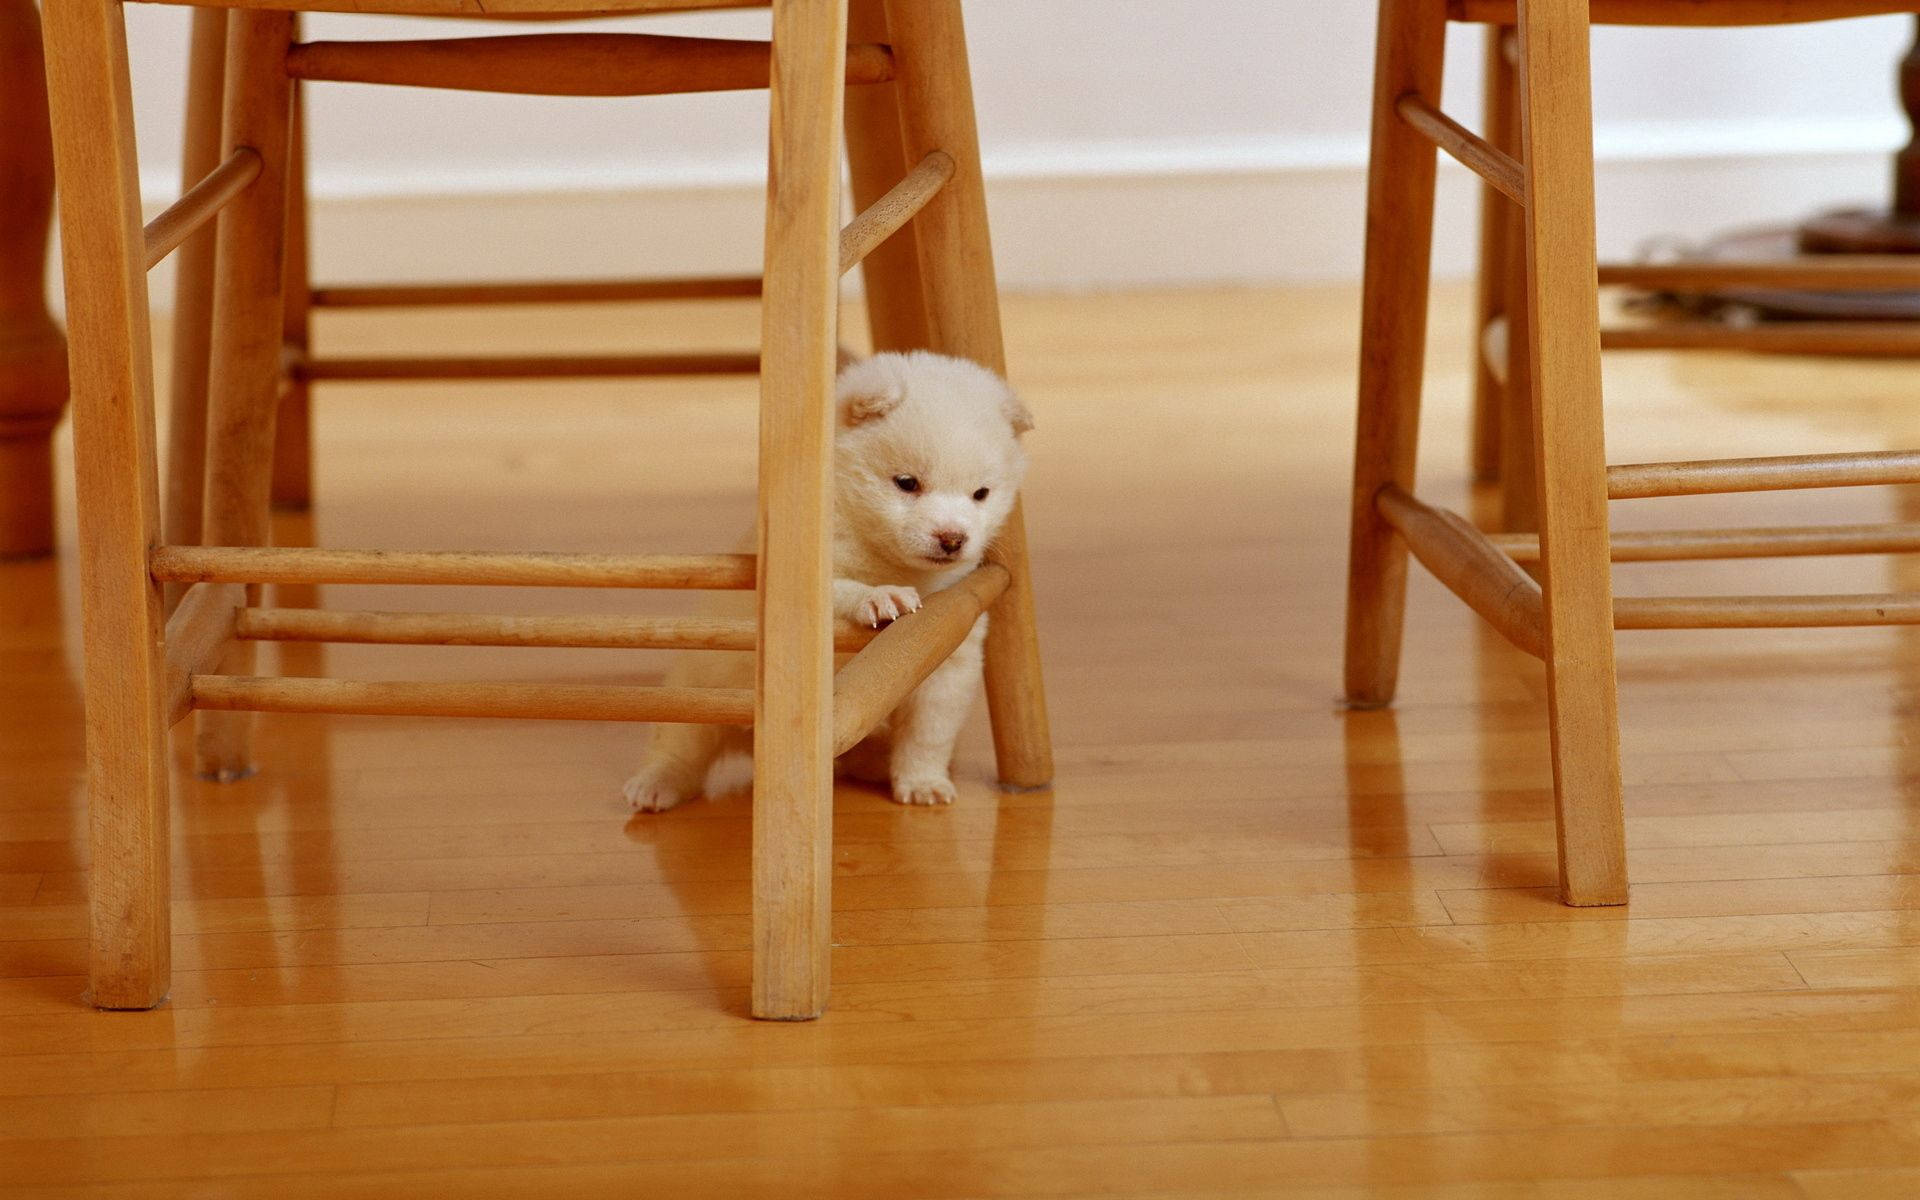 White Puppy Under The Chair